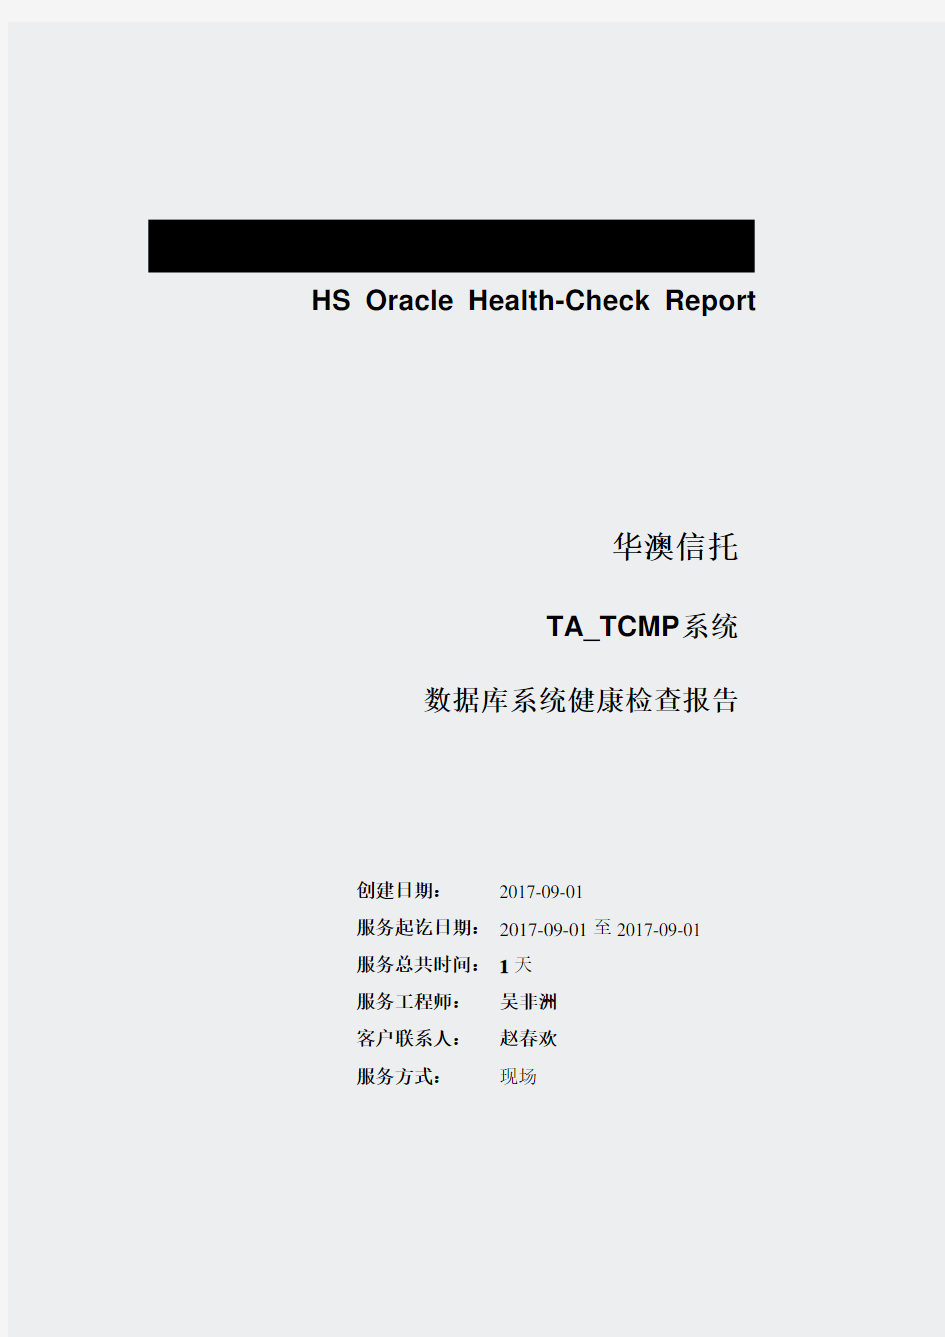 华澳信托_TA_TCMP(trustdb)_数据库健康检查报告_20170901(177)